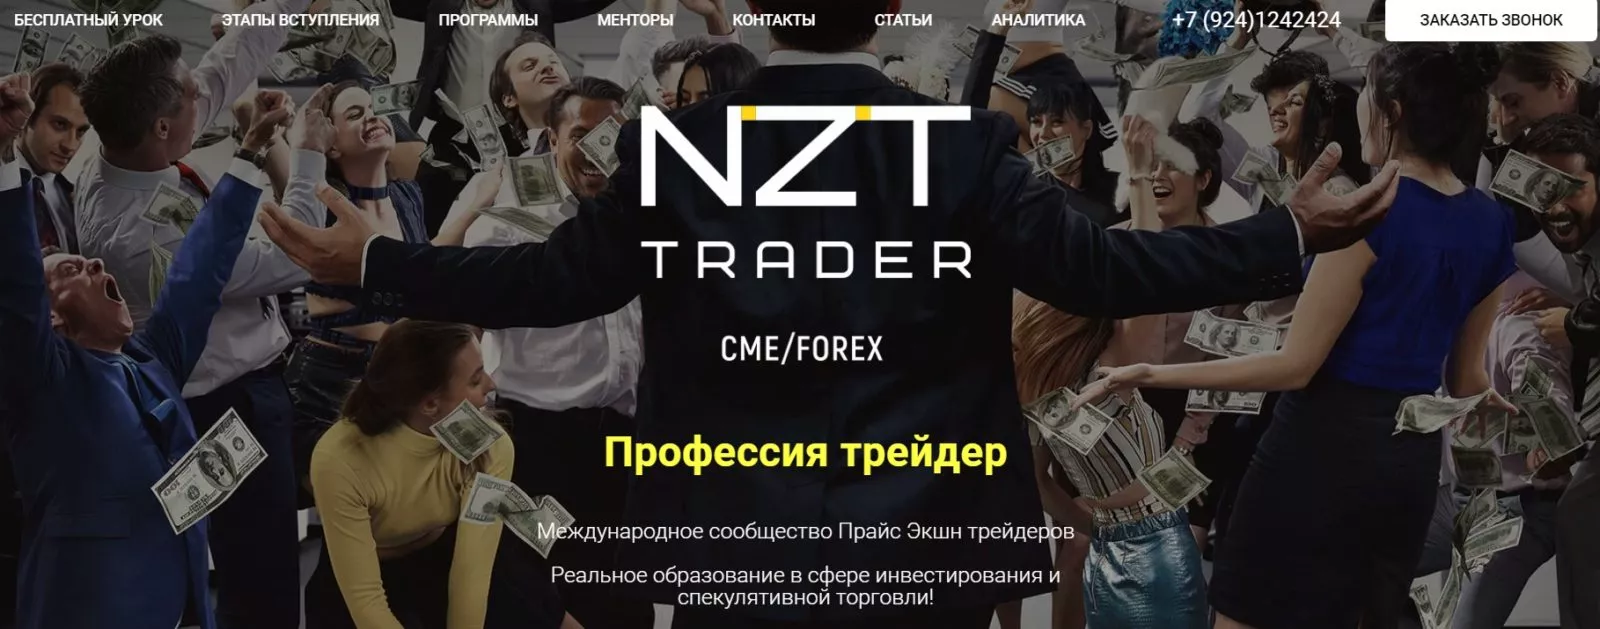 Сайт трейдера Nzt trader